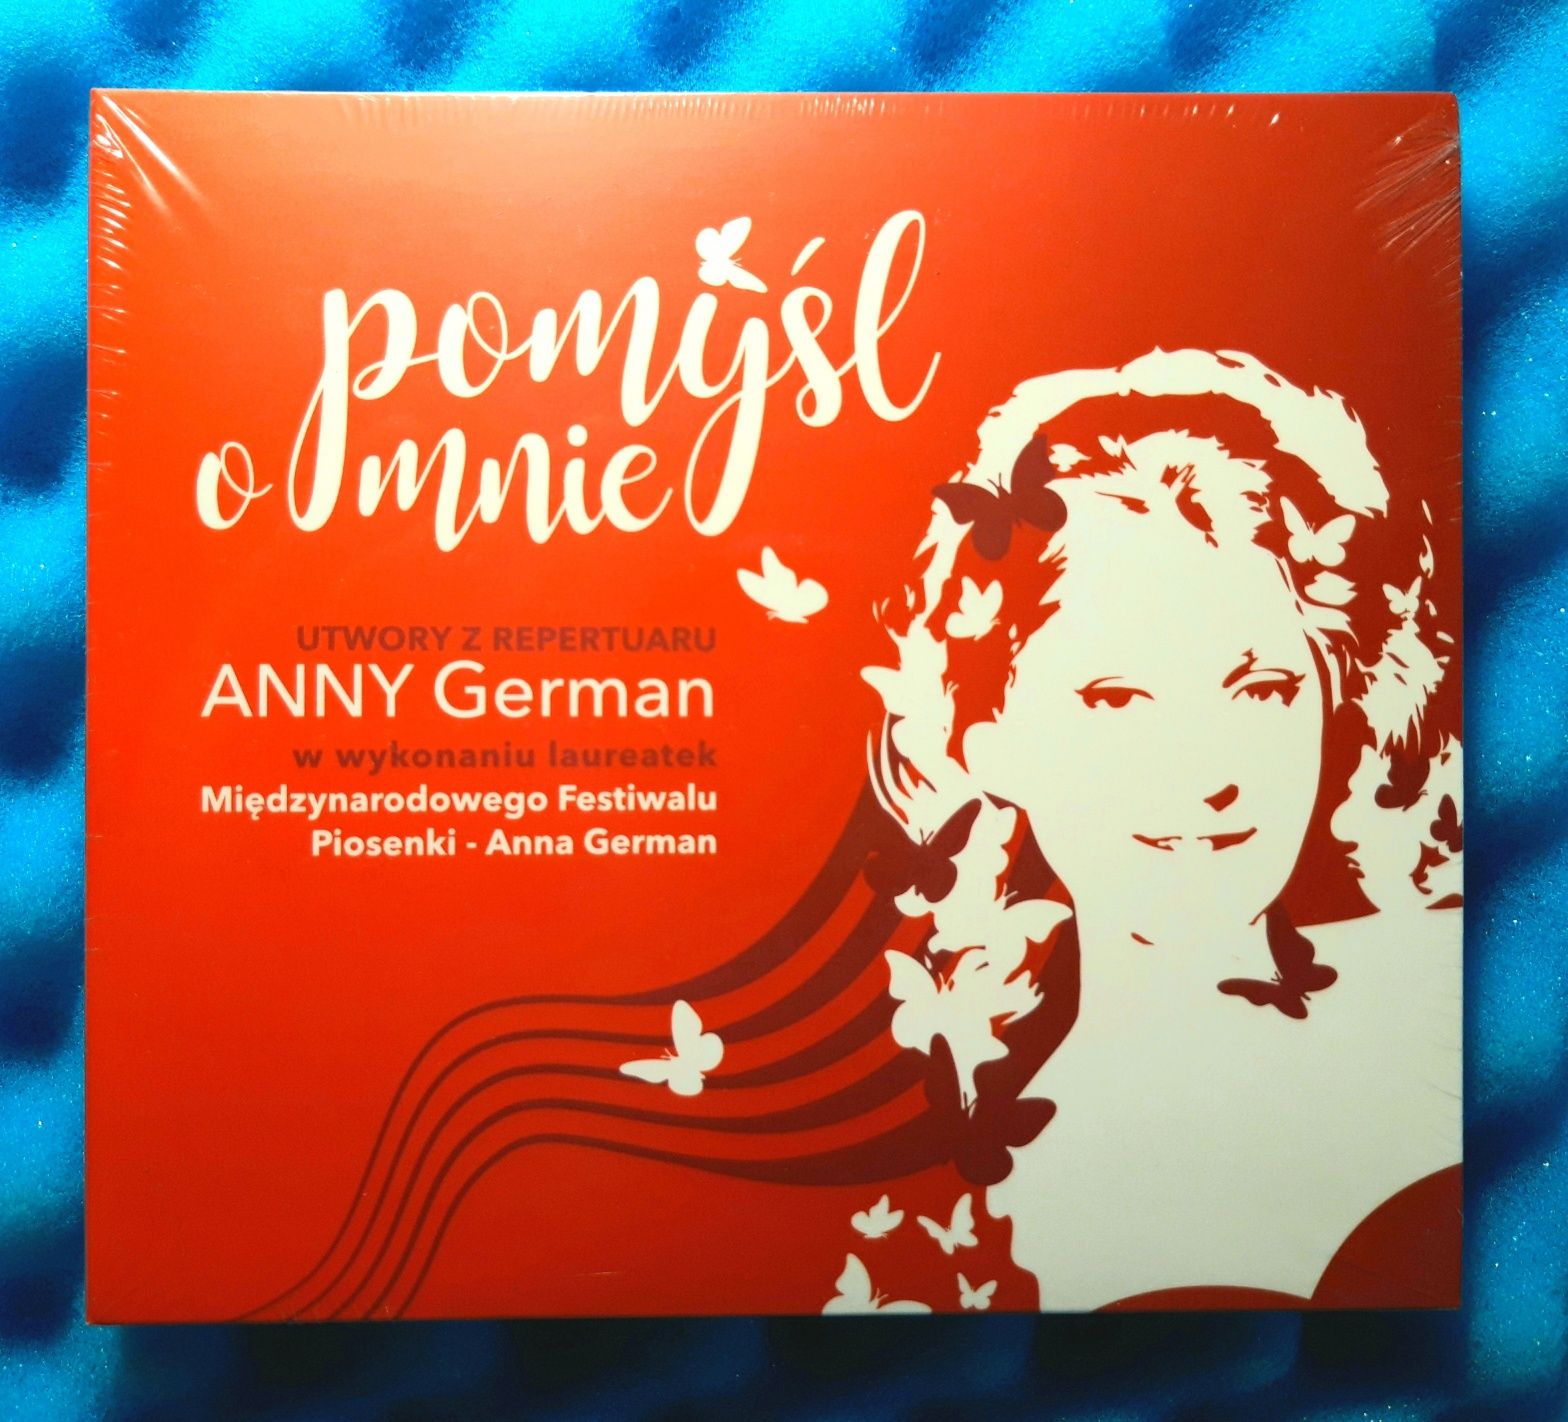 Pomyśl o mnie - Utwory Z Repertuaru Anny German (CD, 2021, FOLIA)